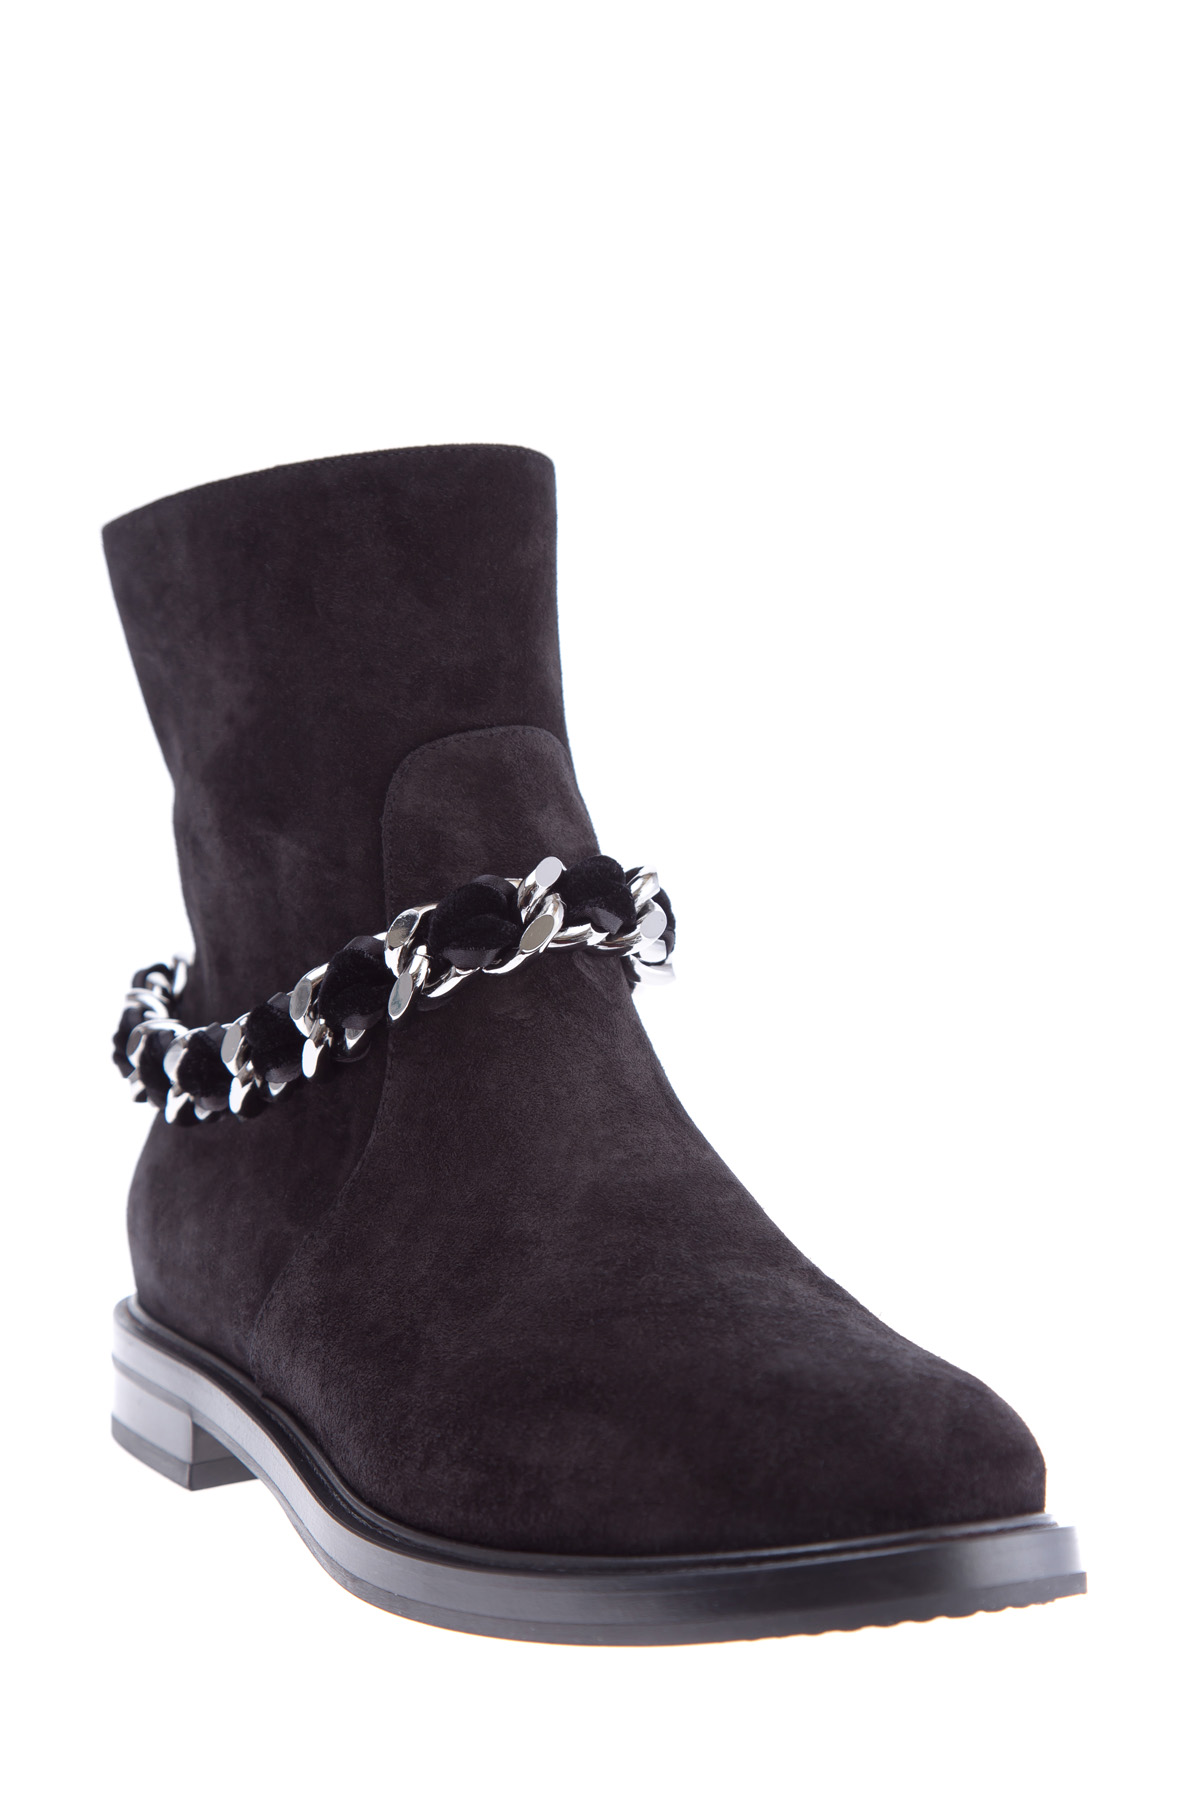 Ботинки из замши с символом бренда в виде цепи на голенище CASADEI, цвет черный, размер 36.5;37.5;38;38.5;41 - фото 3